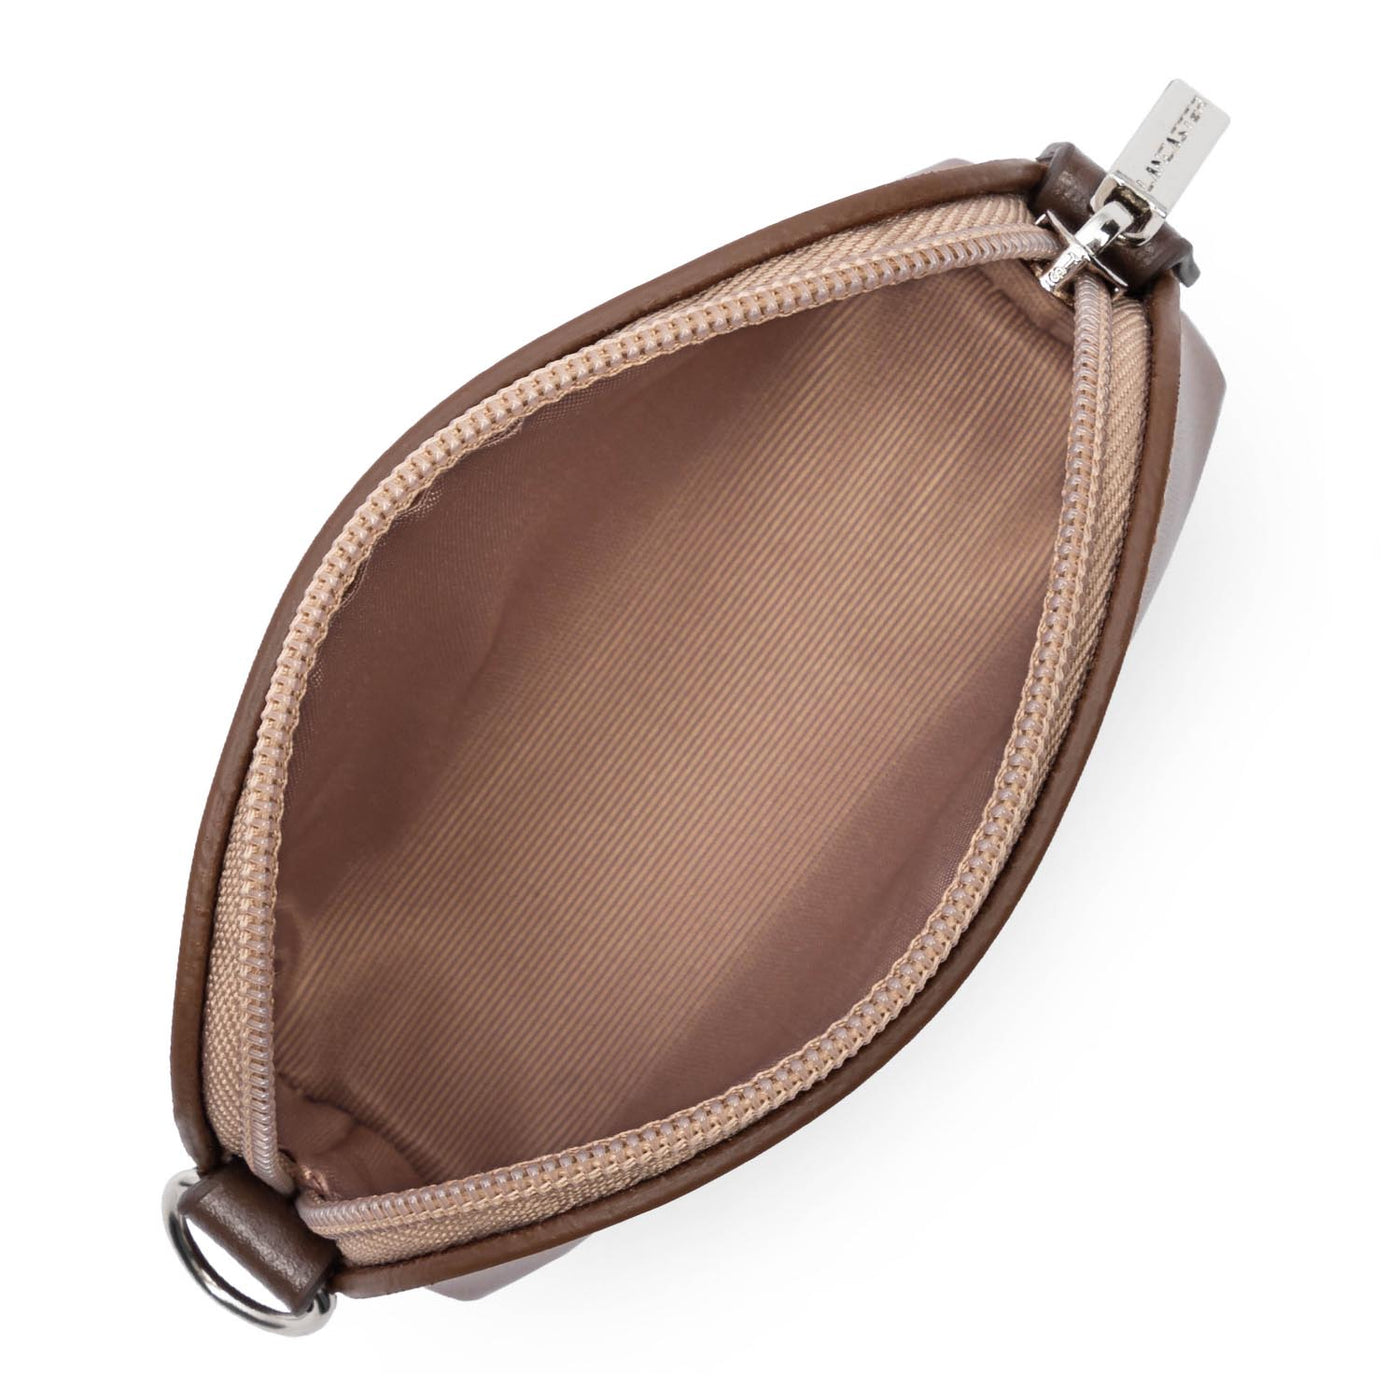 coin purse - smooth #couleur_vison-nude-fonc-marron